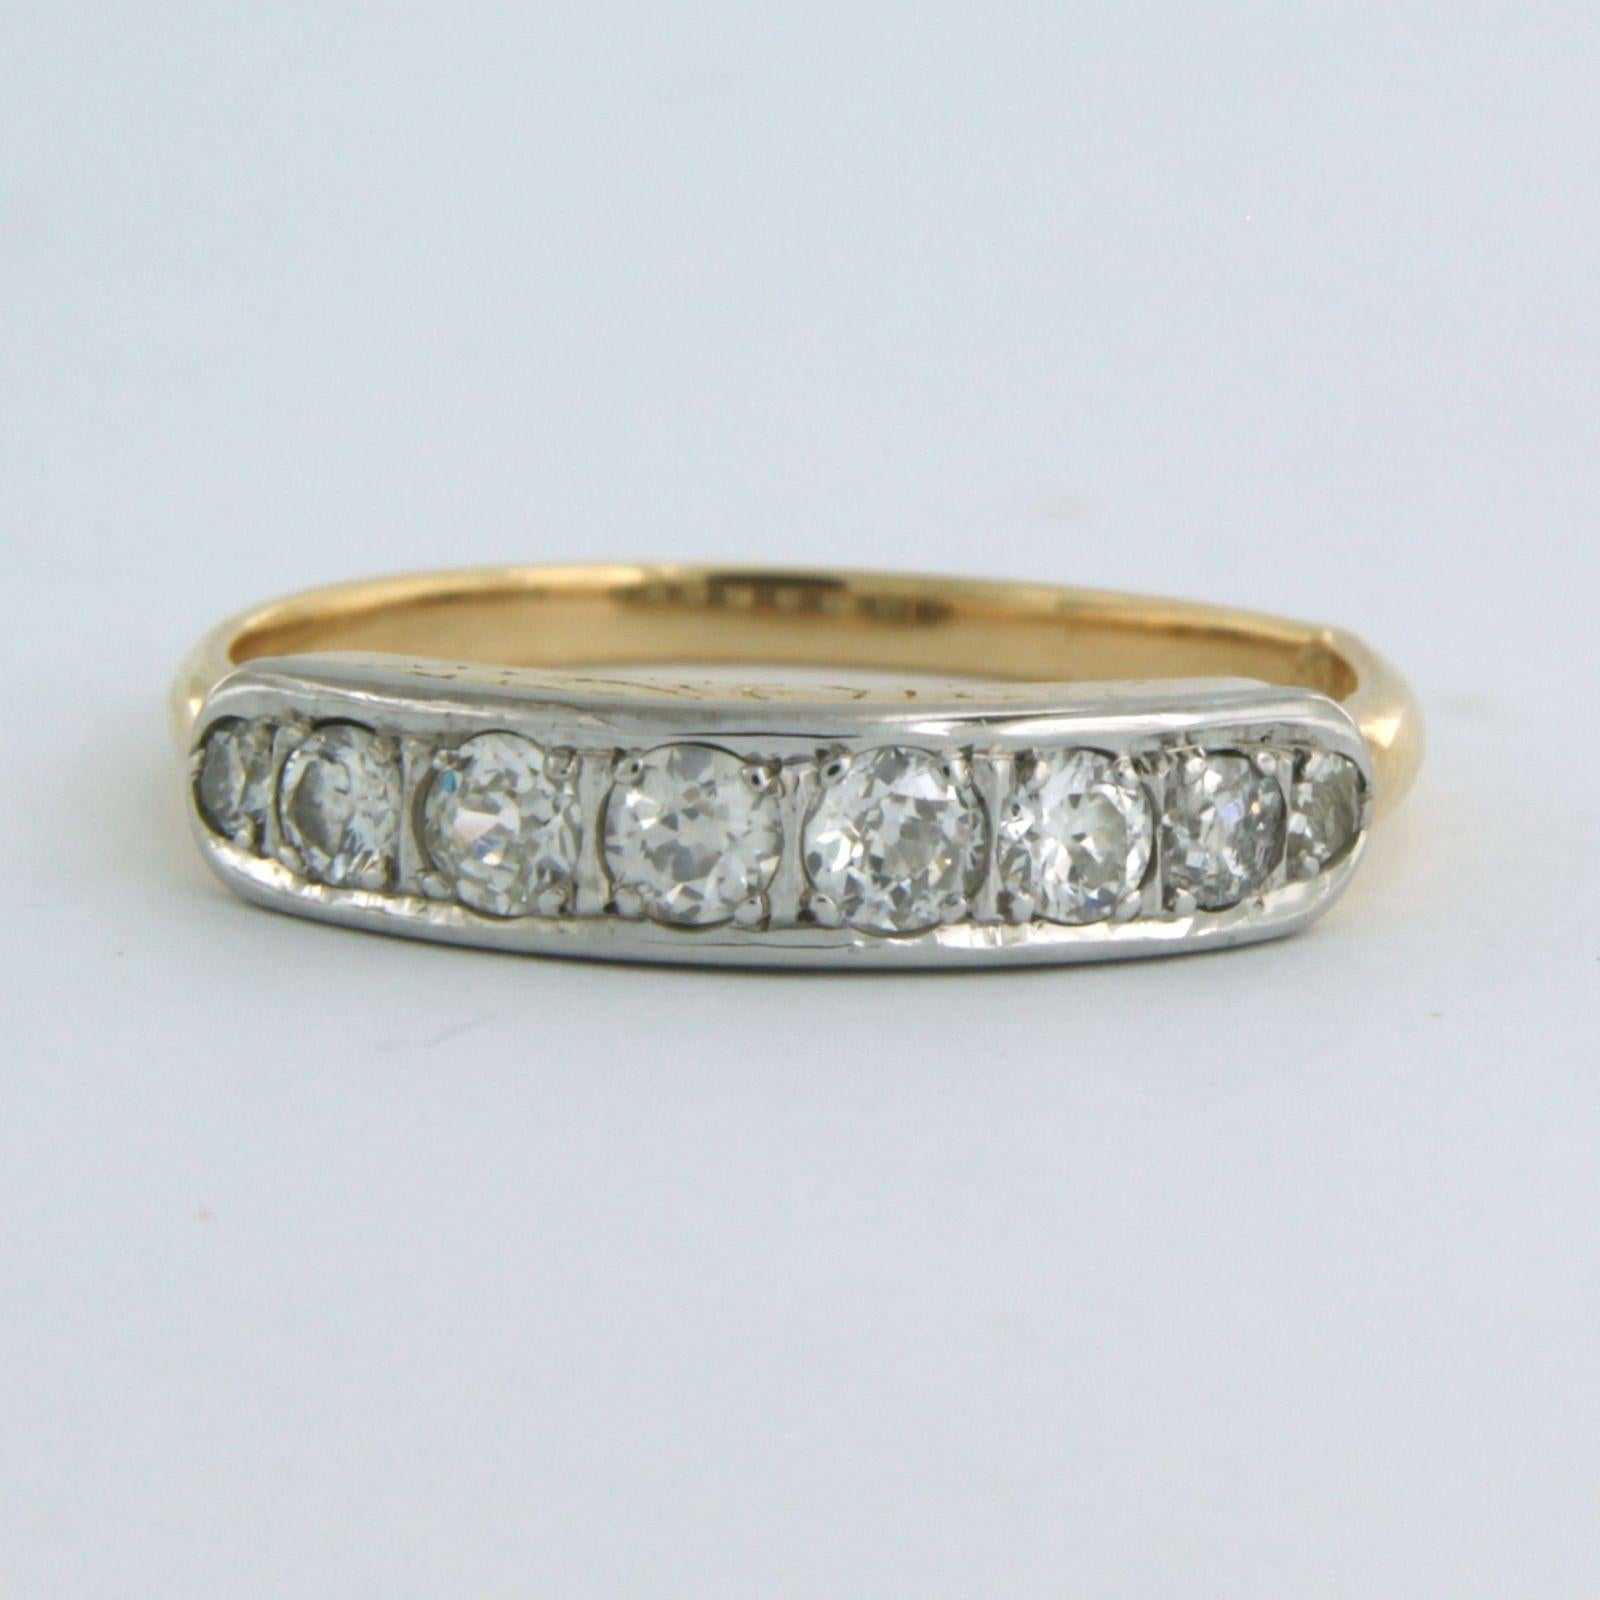 Bague en or bicolore 14k sertie d'un diamant de taille ancienne européenne jusqu'à. 0.50ct - F/G - VS/SI - taille U.S. 8.5 - EU. 18.5 (58)

description détaillée :

le haut de l'anneau a une largeur de 4.0 mm

poids 2,9 grammes

bague taille US 8.5